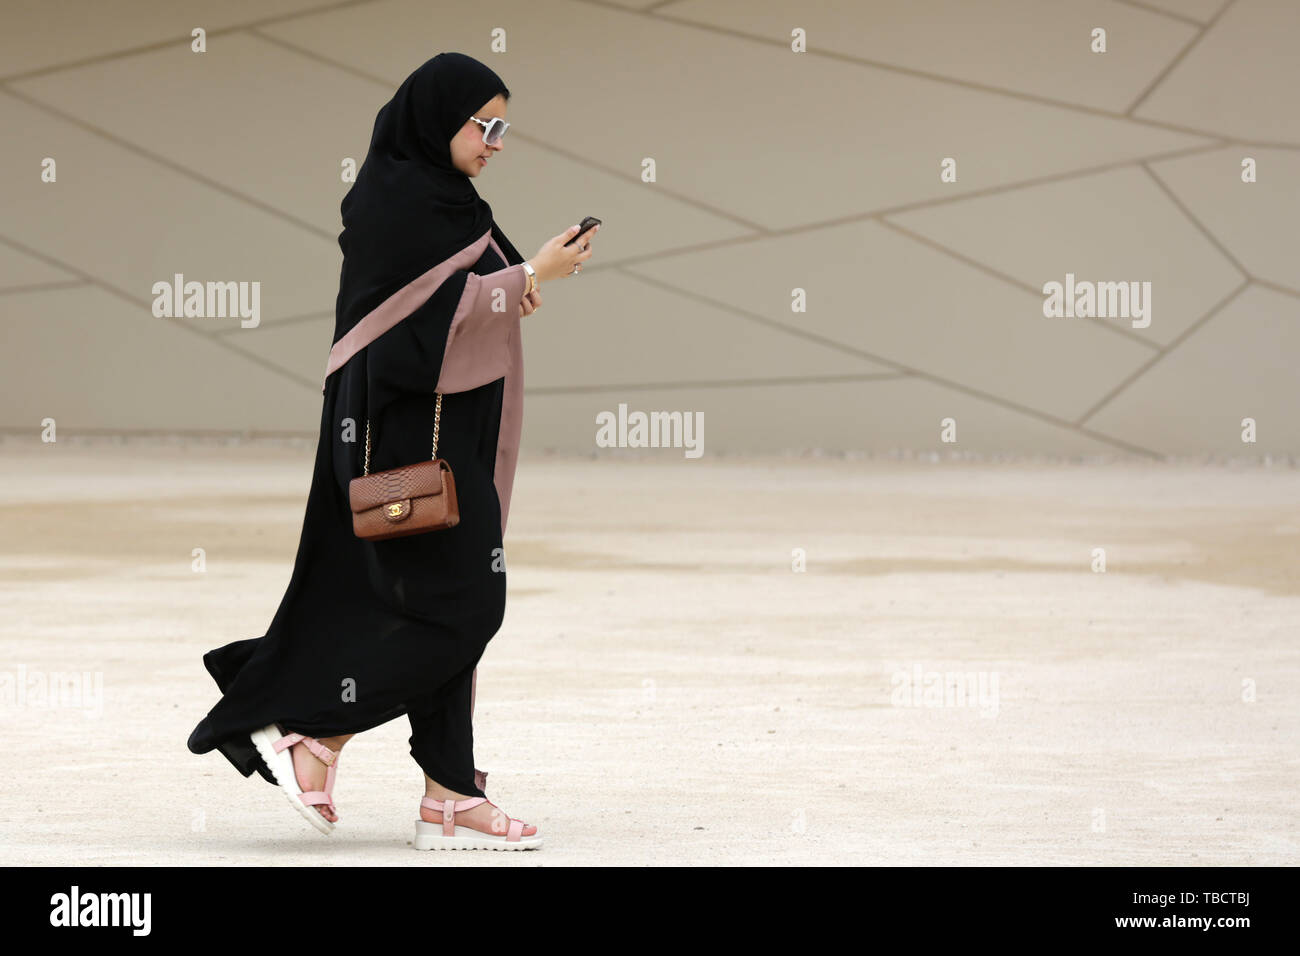 Doha, Katar - 11 April, 2019: Ein qatari Frau in einem langen schwarzen Kleid namens abayha Spaziergänge rund um die National Museum von Qatar. Stockfoto